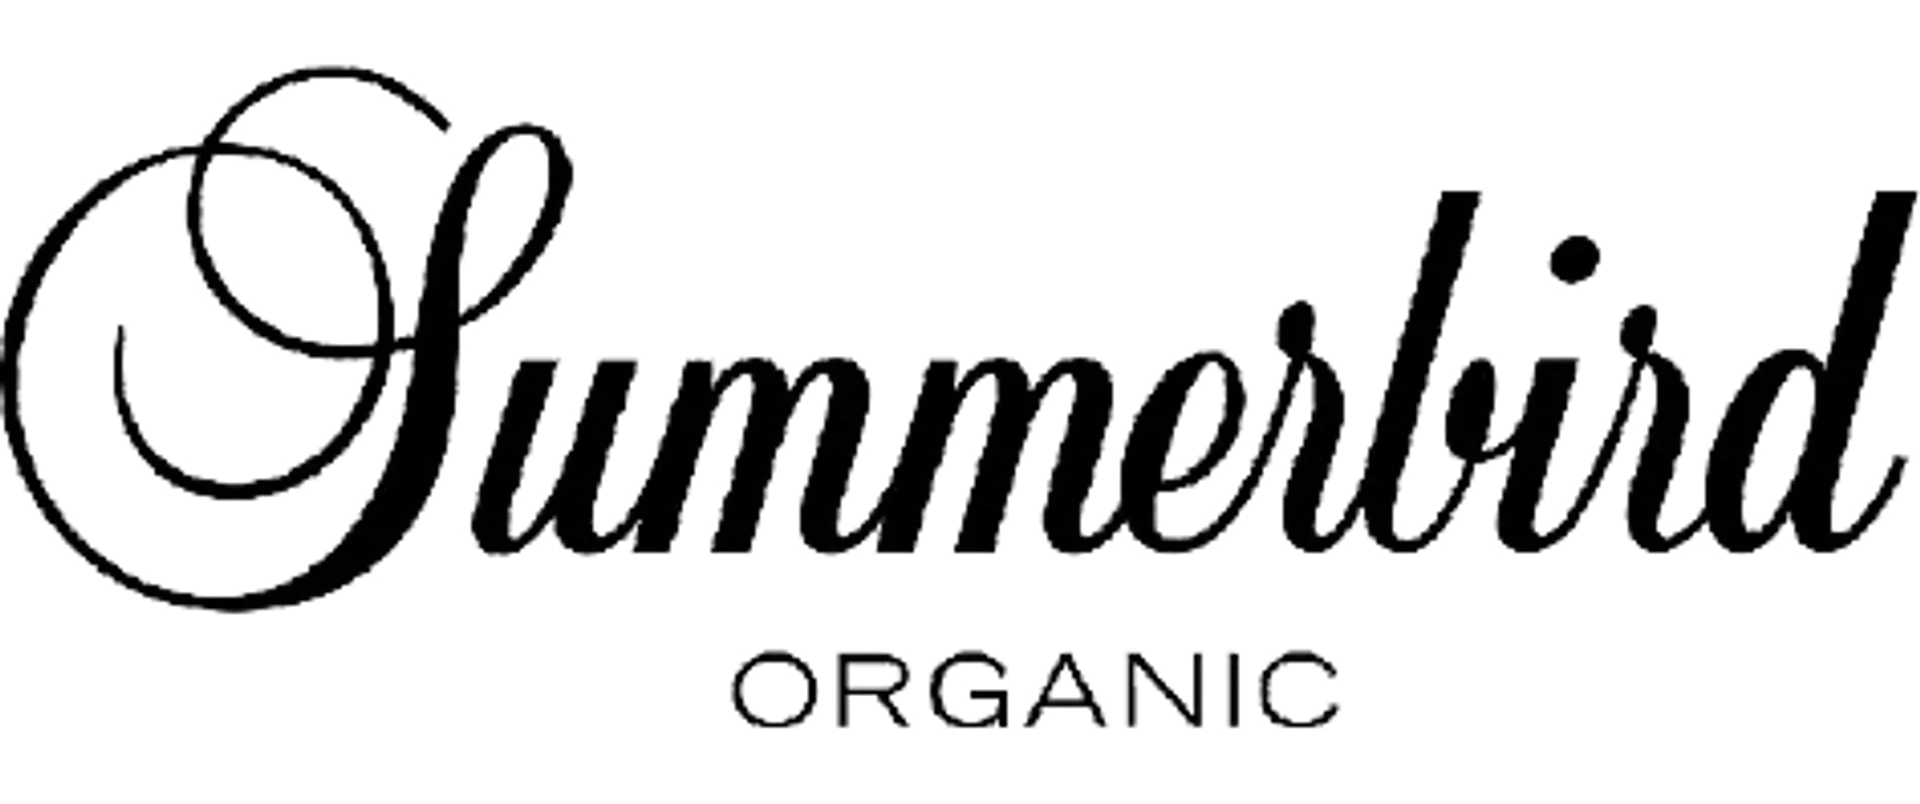 SUMMERBIRD logo of current catalogue